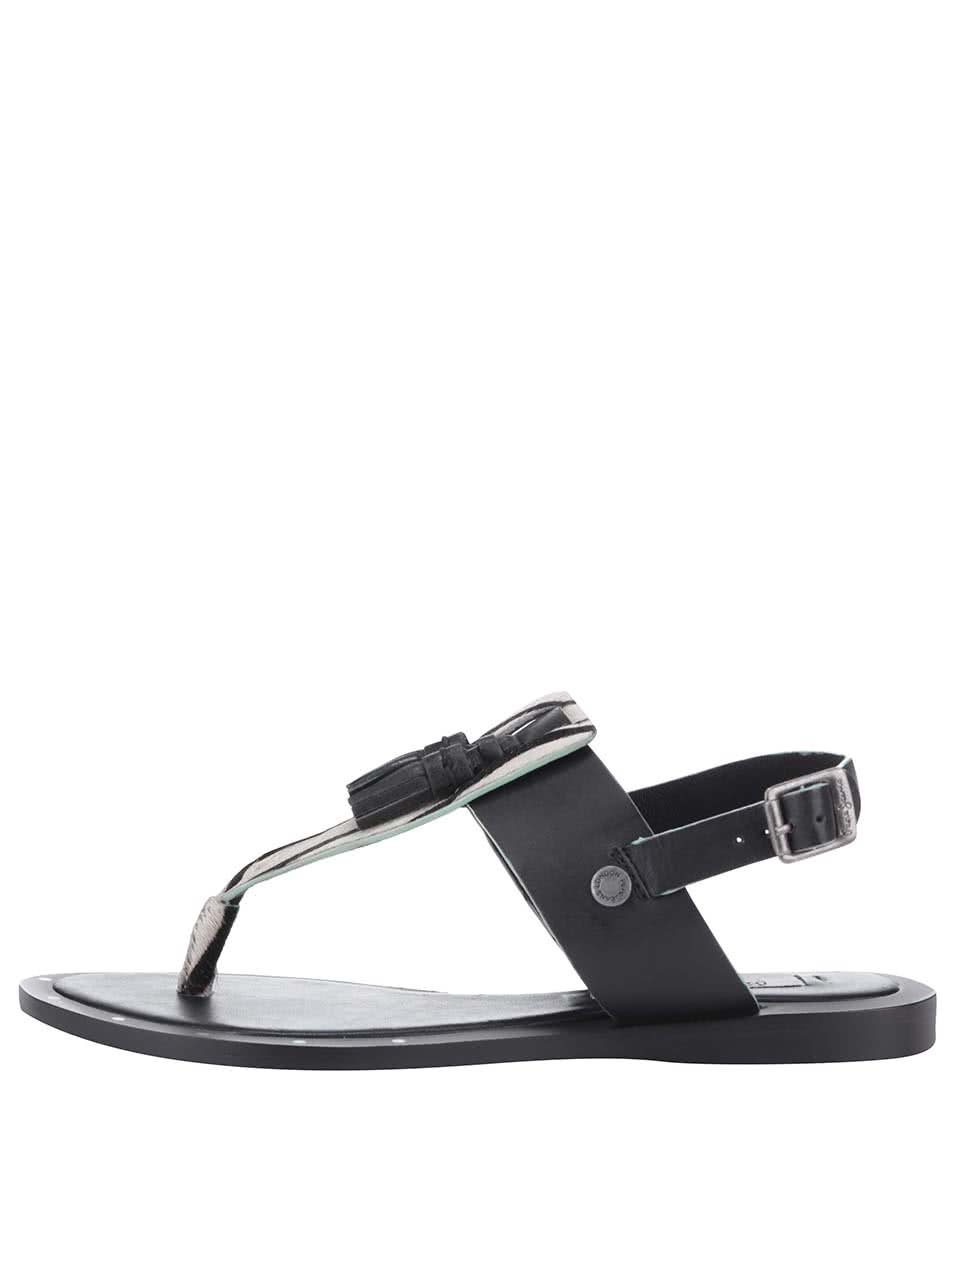 Černé dámské kožené sandálky se vzorem Pepe Jeans